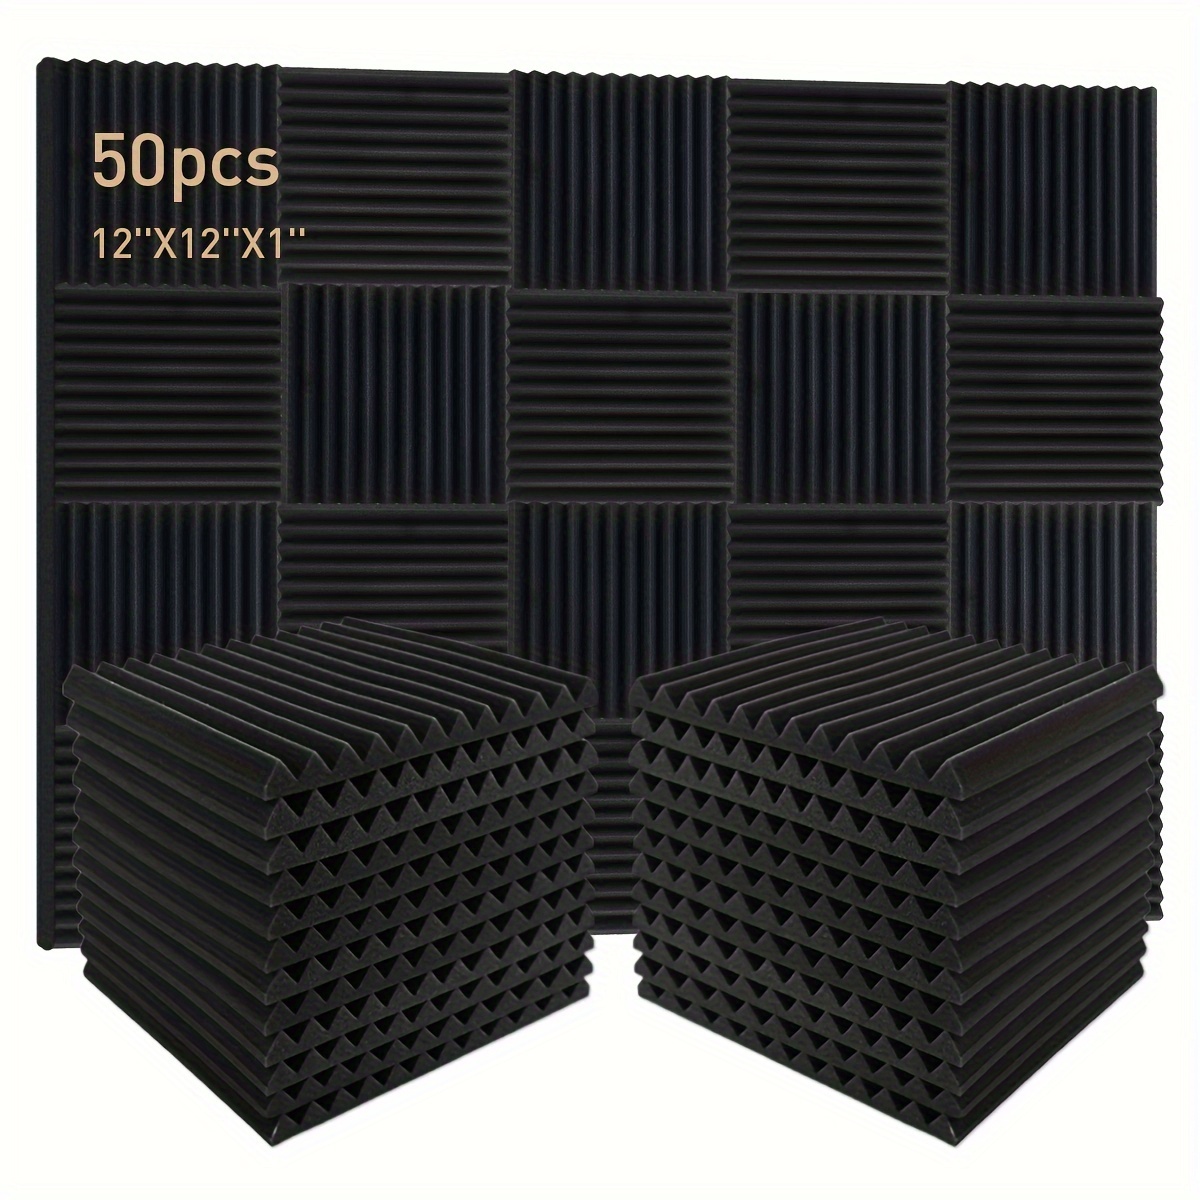 

50pcs Acoustic Foam Panels, 1"×12"×12" Soundproofing Wedges Fire Resistant Absorption Treatment Sponge